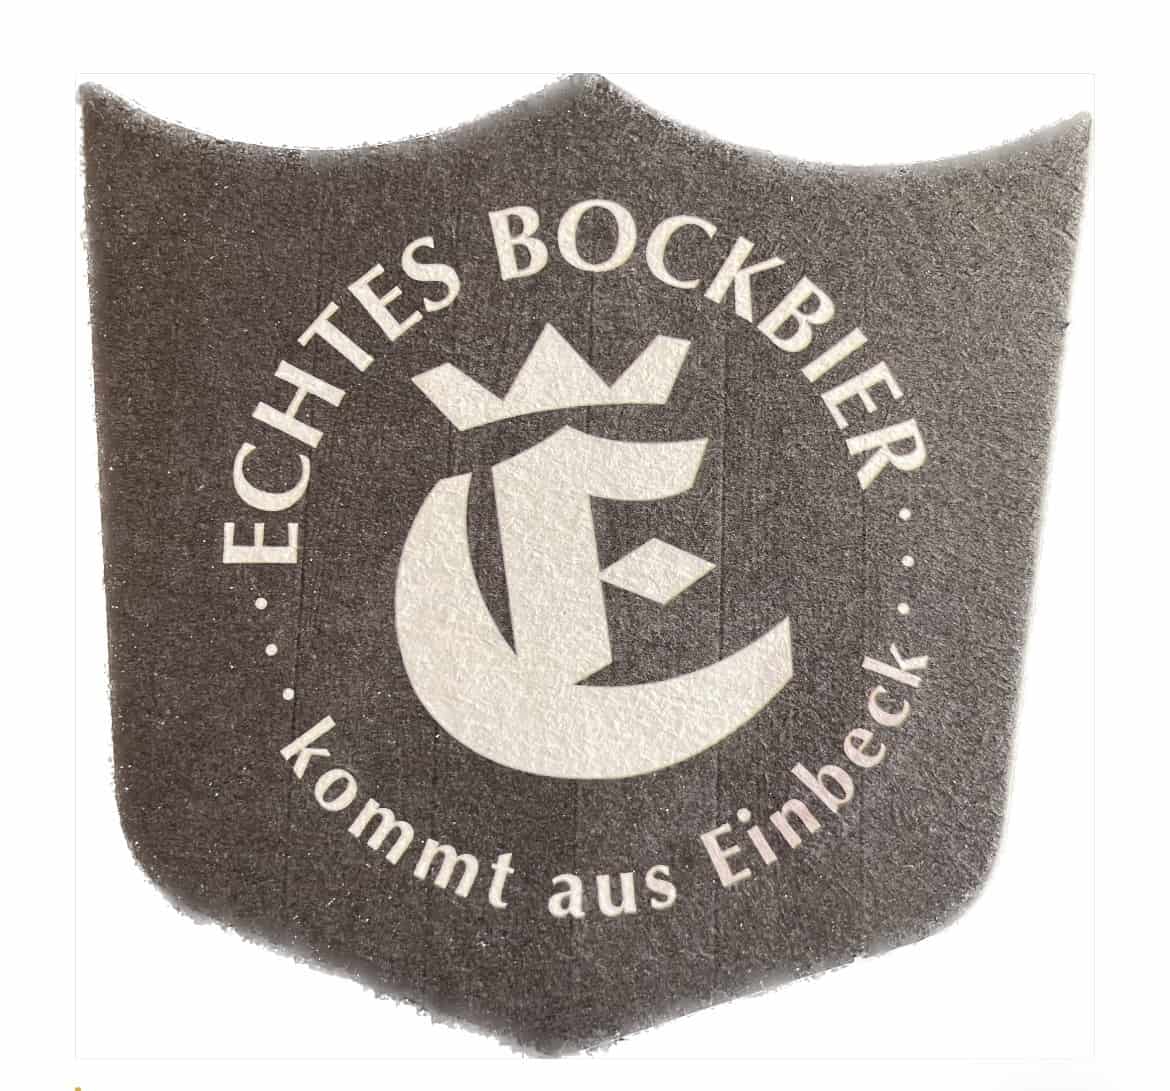 Einbecker-Mai-Urbock-Bierdeckel